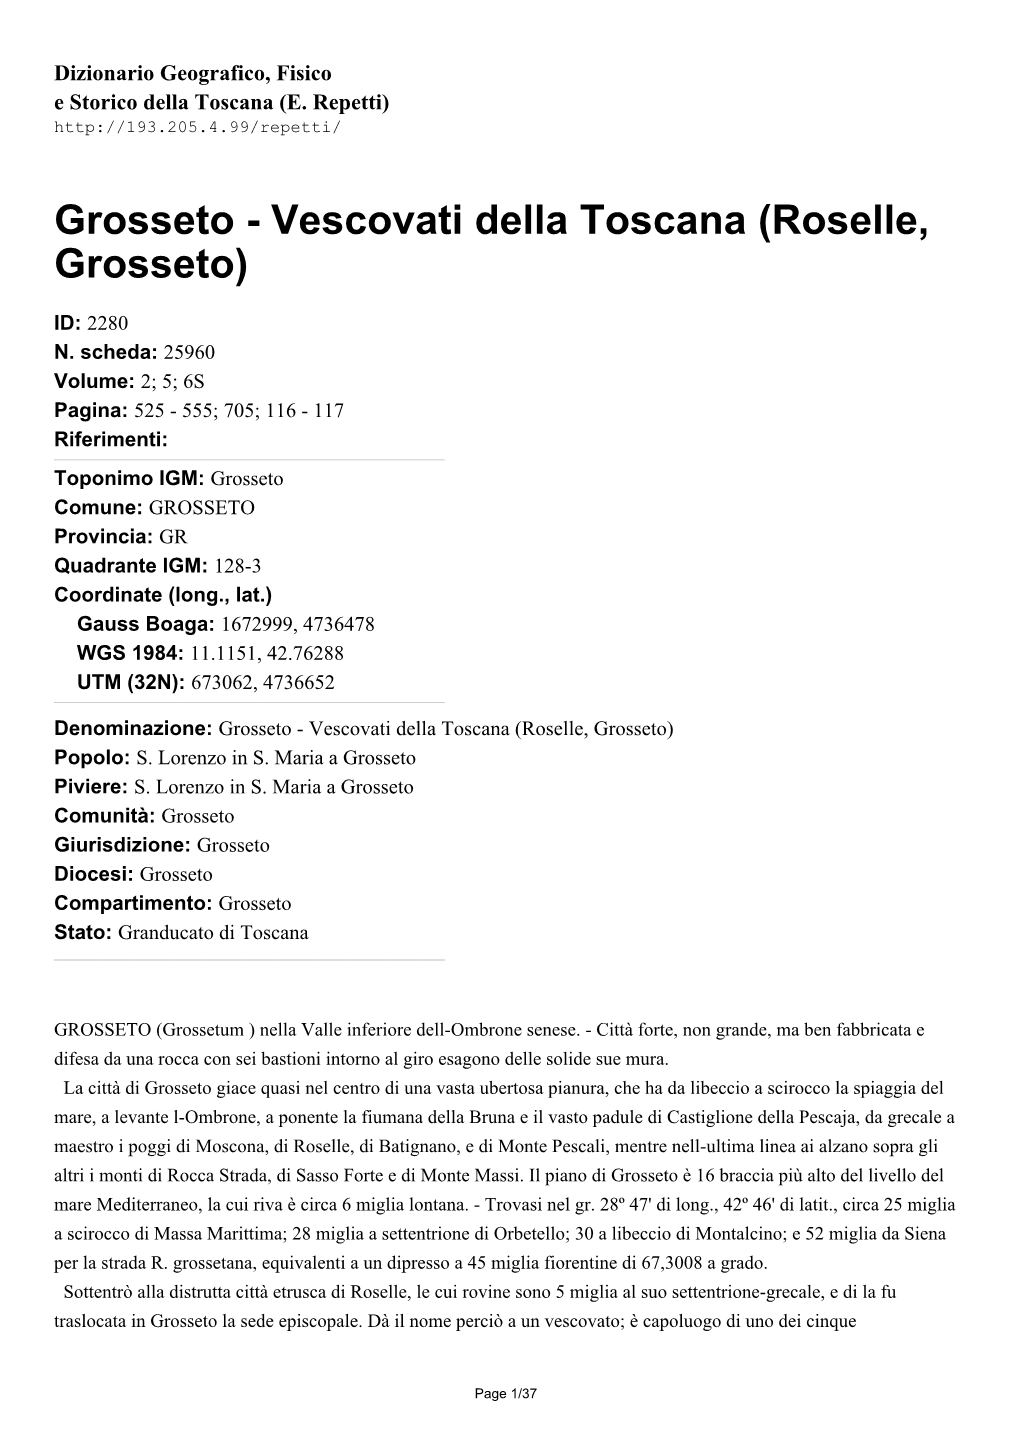 Vescovati Della Toscana (Roselle, Grosseto)